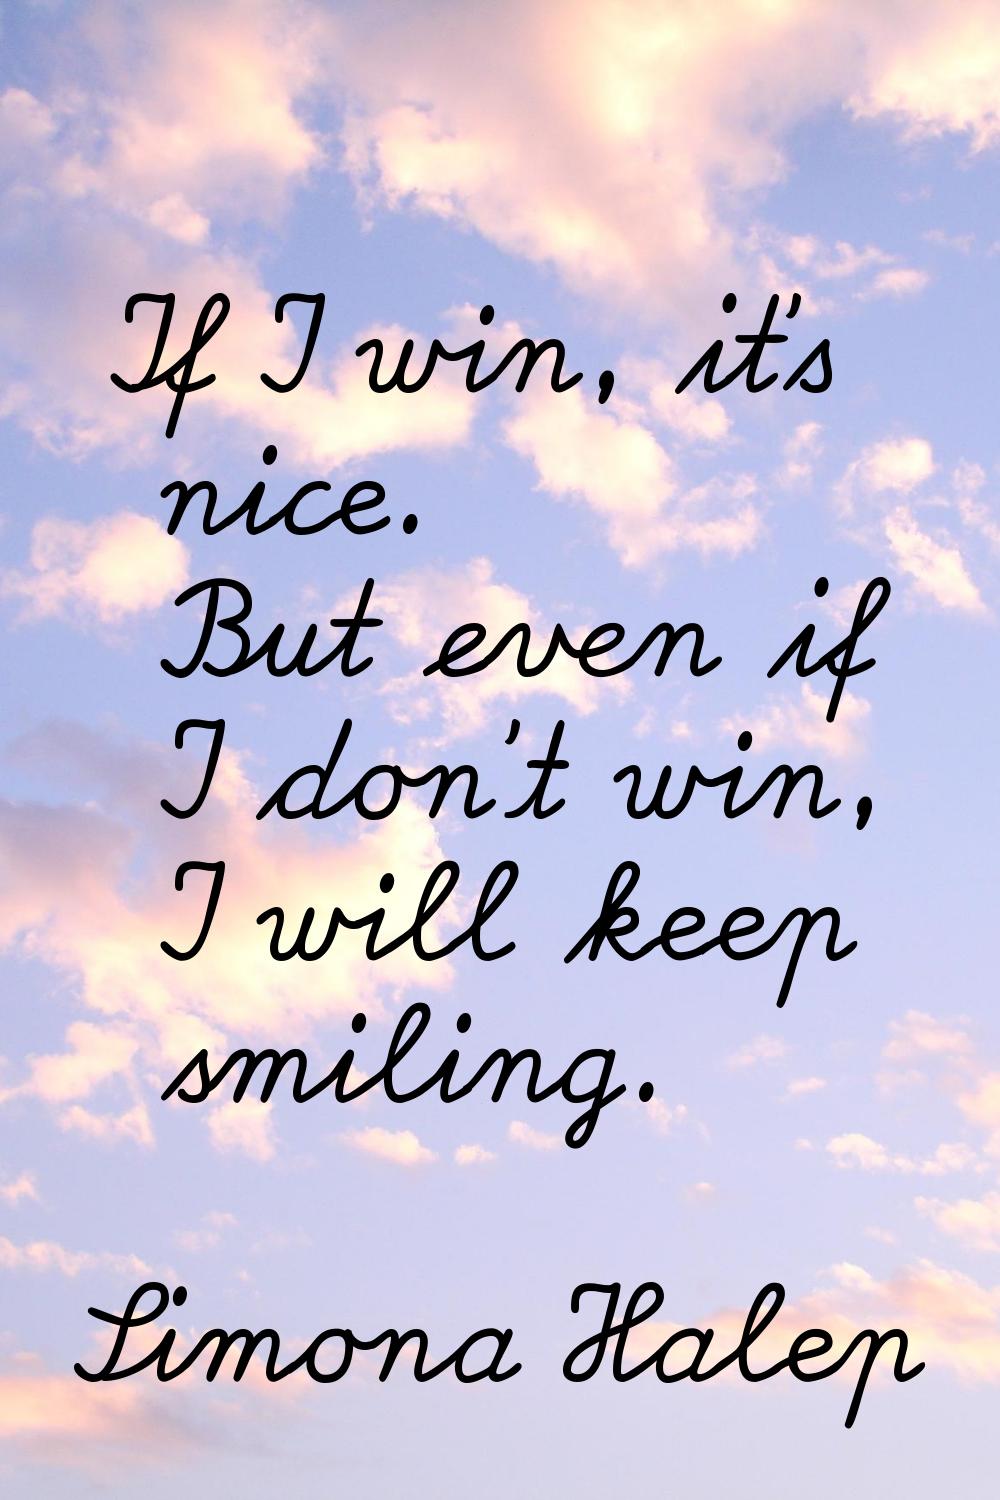 If I win, it's nice. But even if I don't win, I will keep smiling.